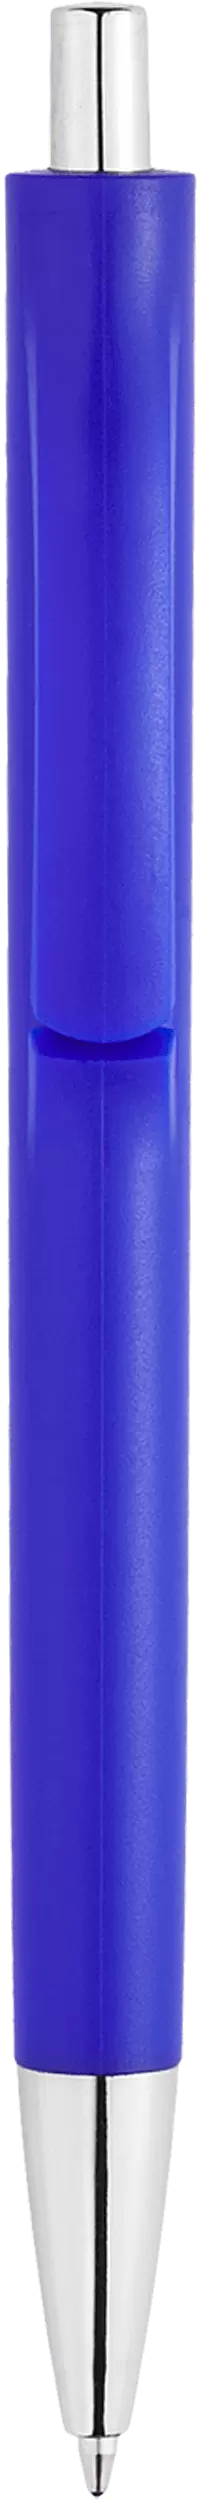 Ручка IGLA CHROME Синяя 1032.01